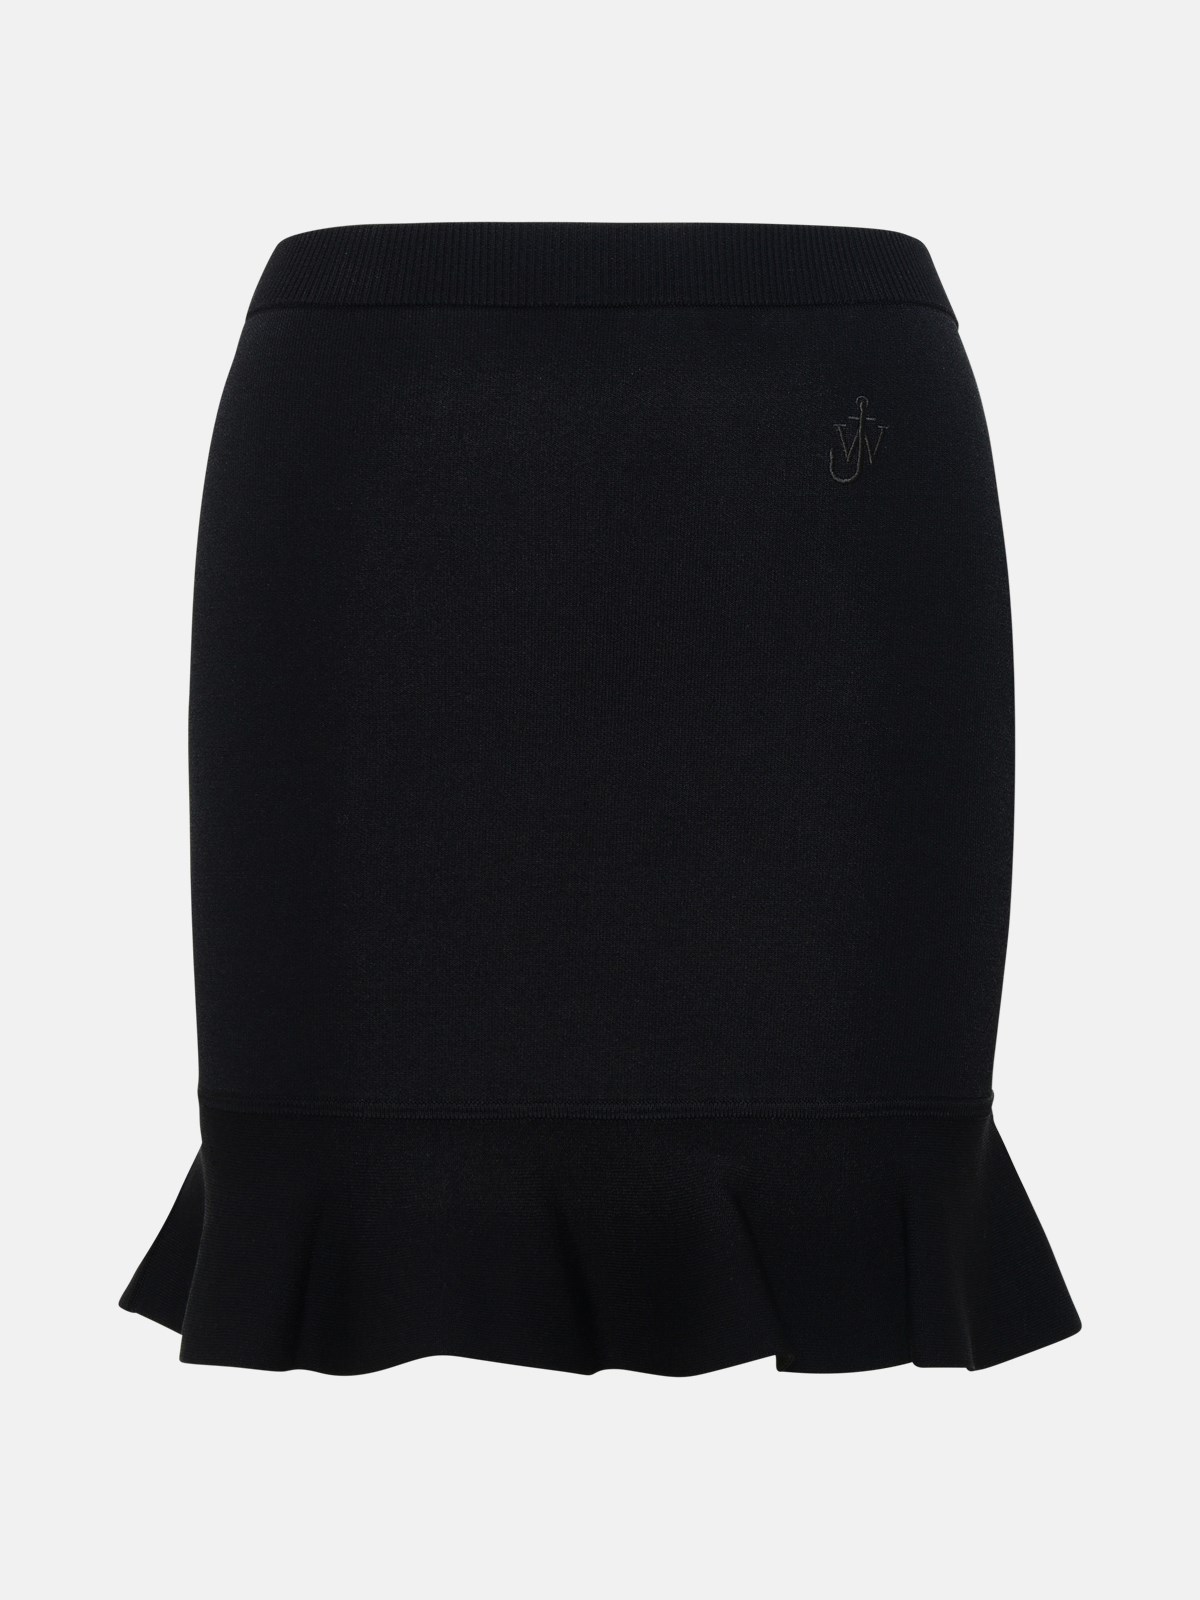 Shop Jw Anderson Black Viscose Blend Skirt